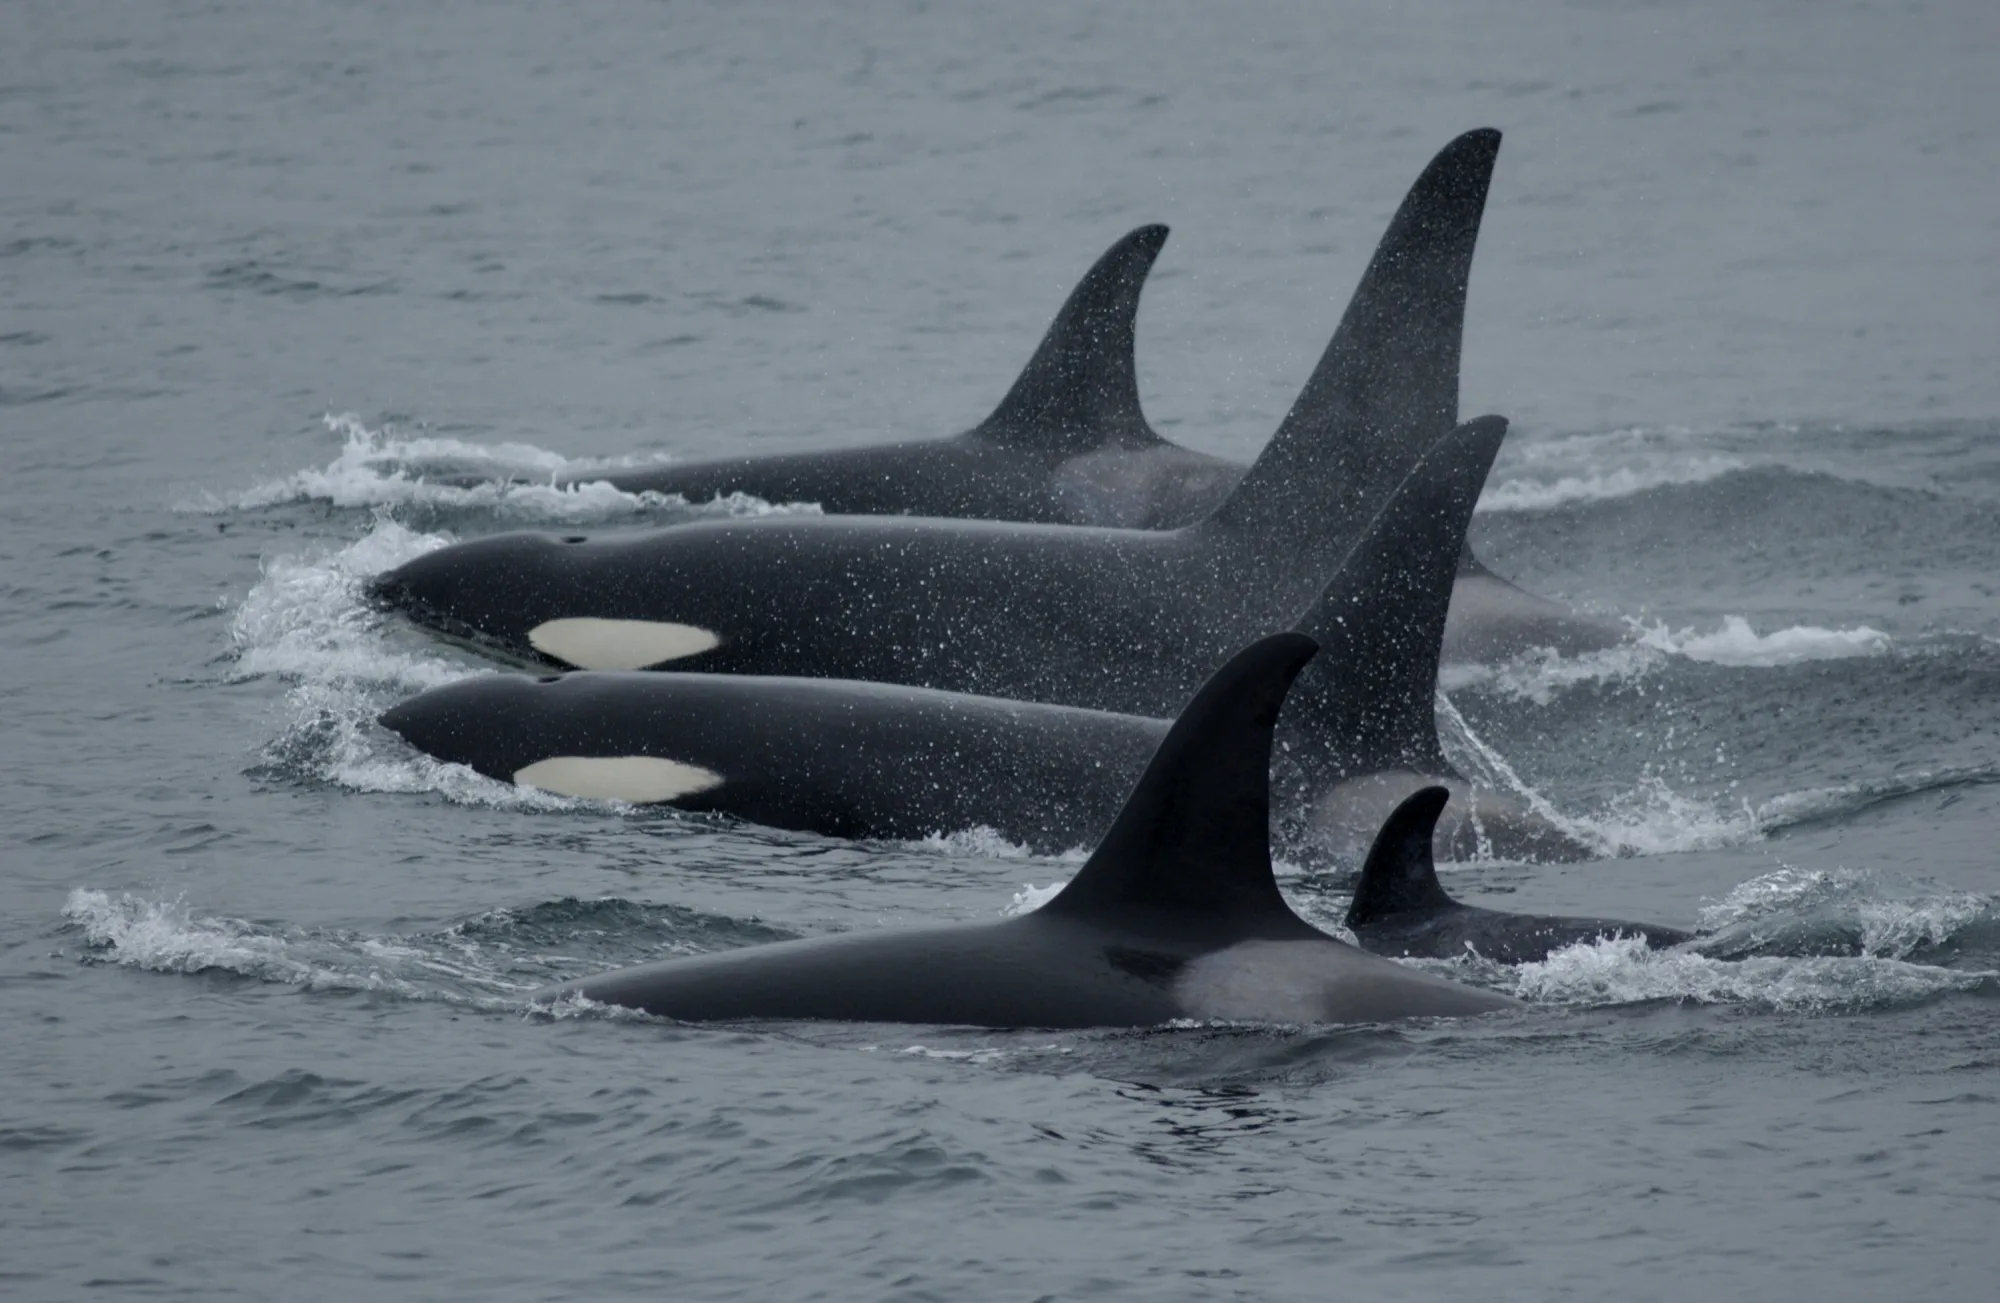 雄性和雌性逆戟鲸最大的区别就在背鳍上，雄性的背鳍呈等腰三角形，雌性则是低矮的镰刀型